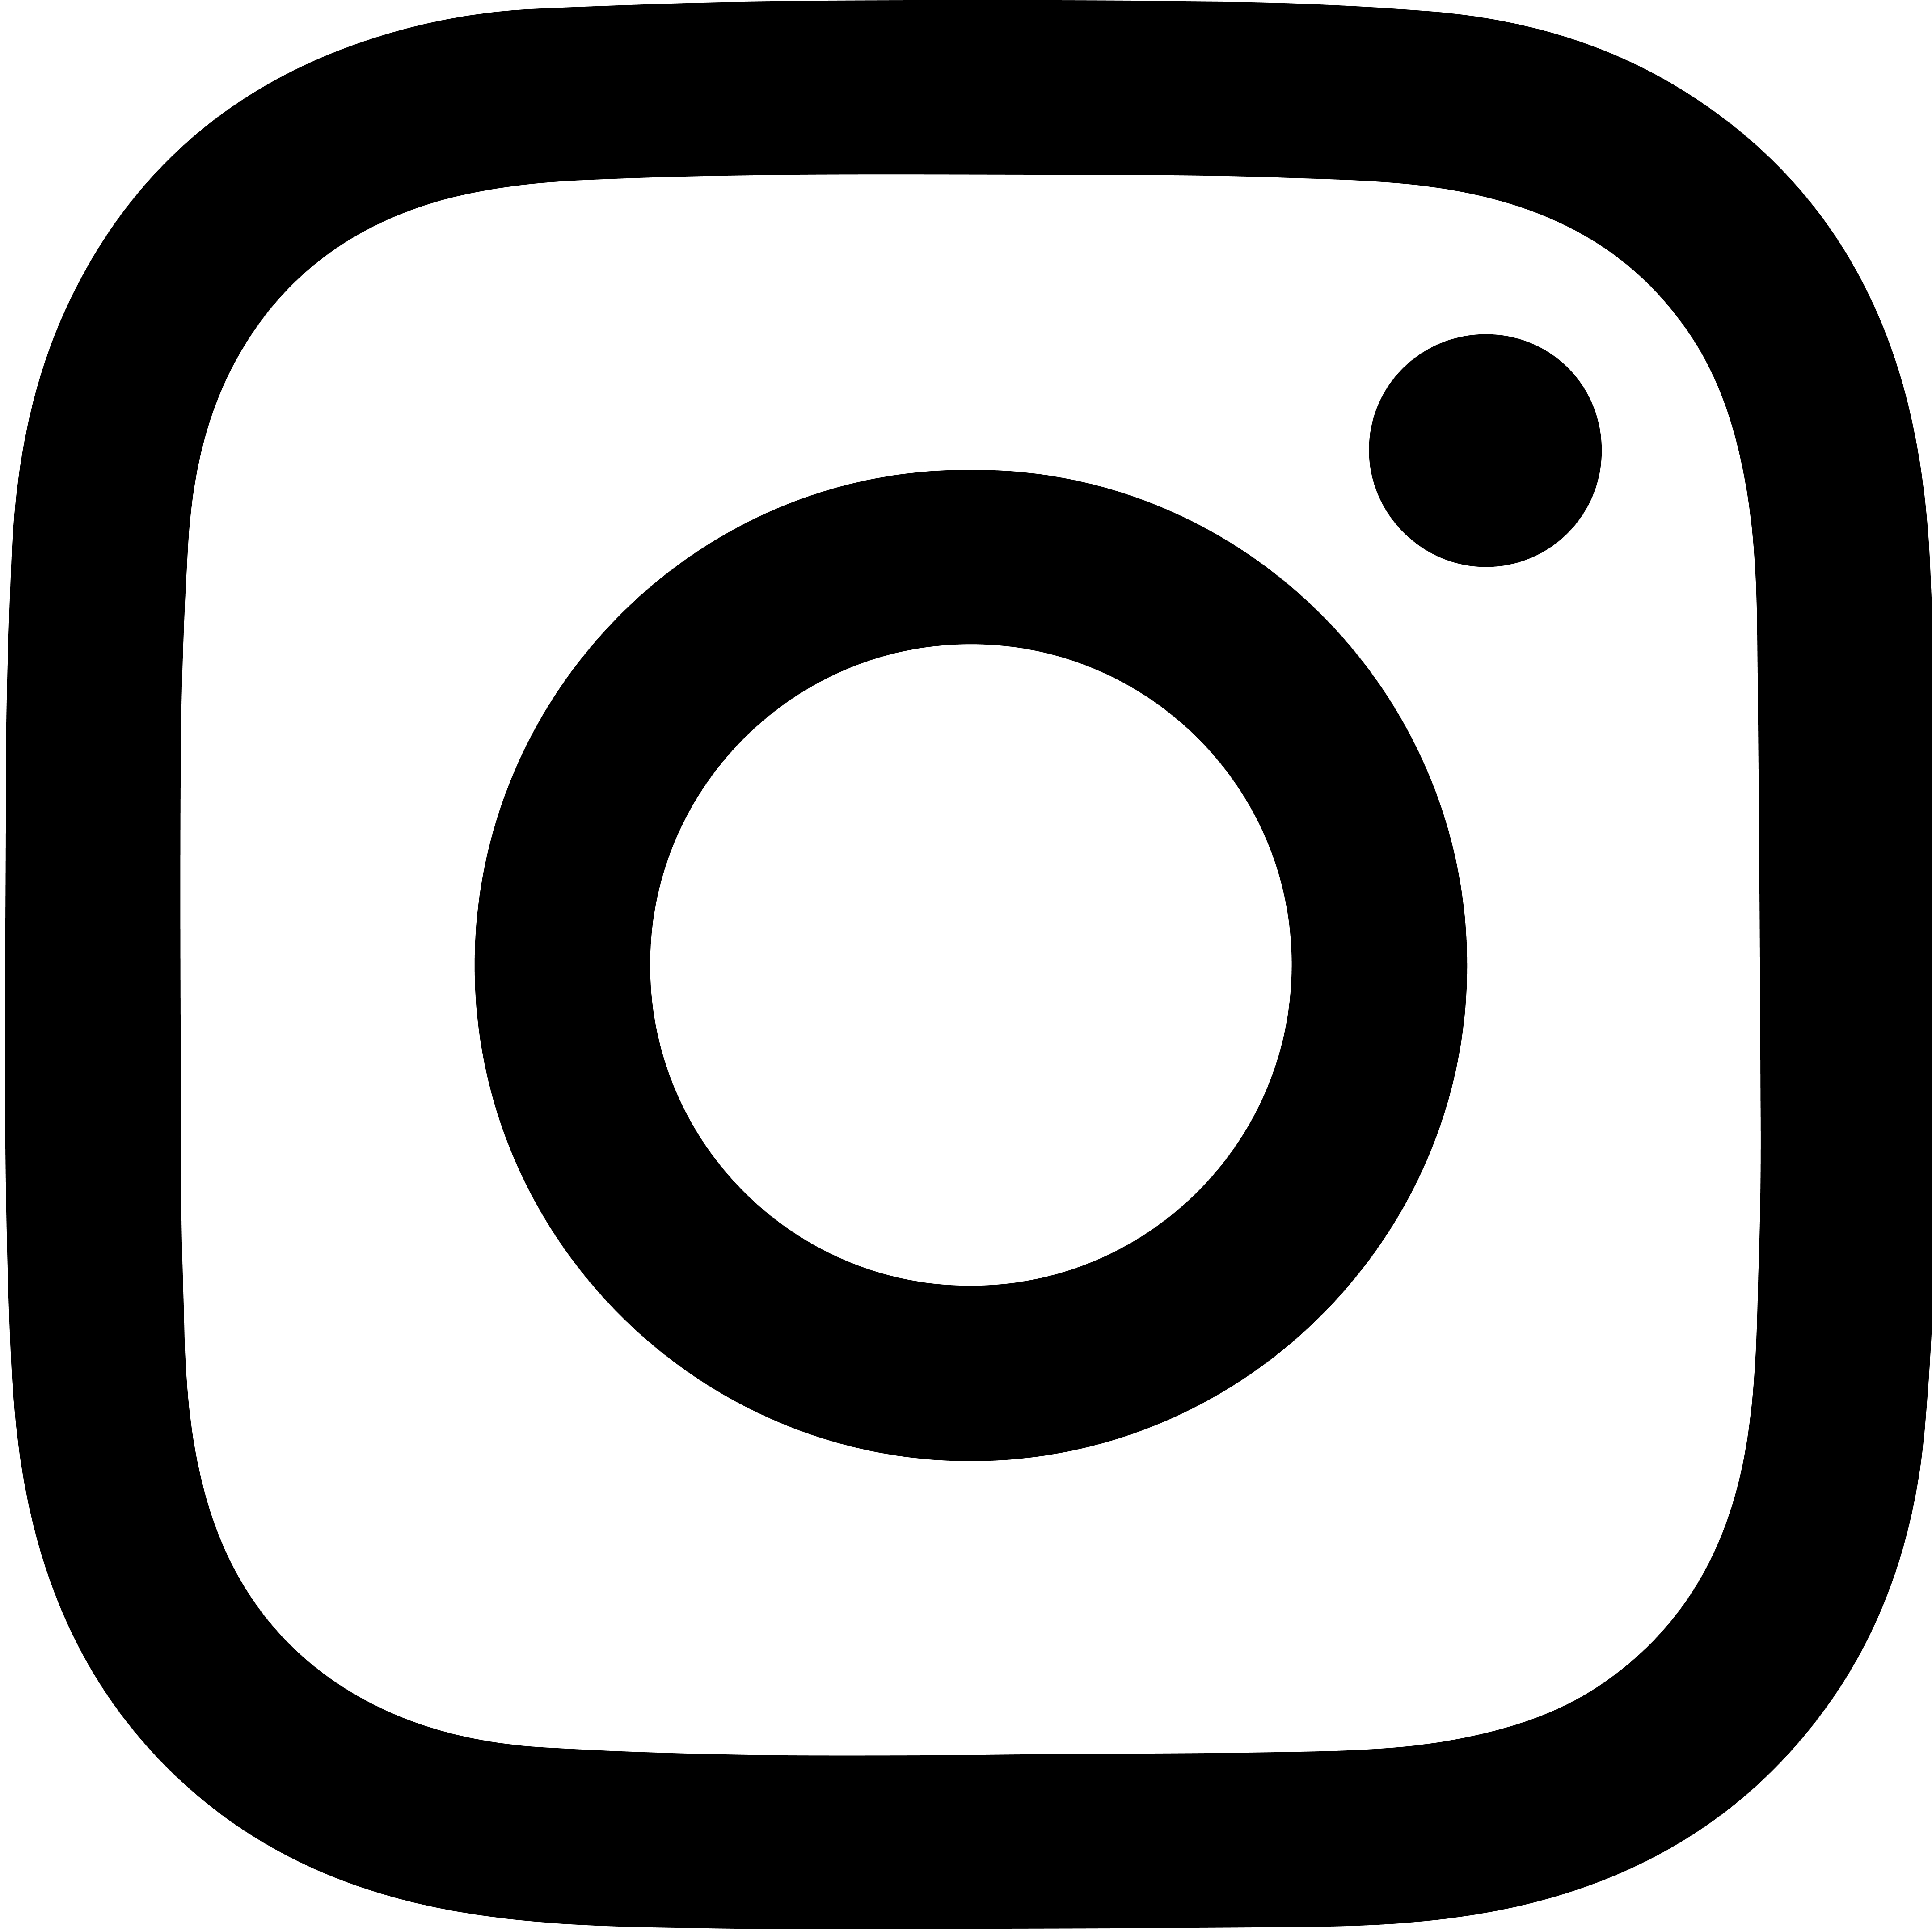 Logo der Social-Media Plattform Instagram